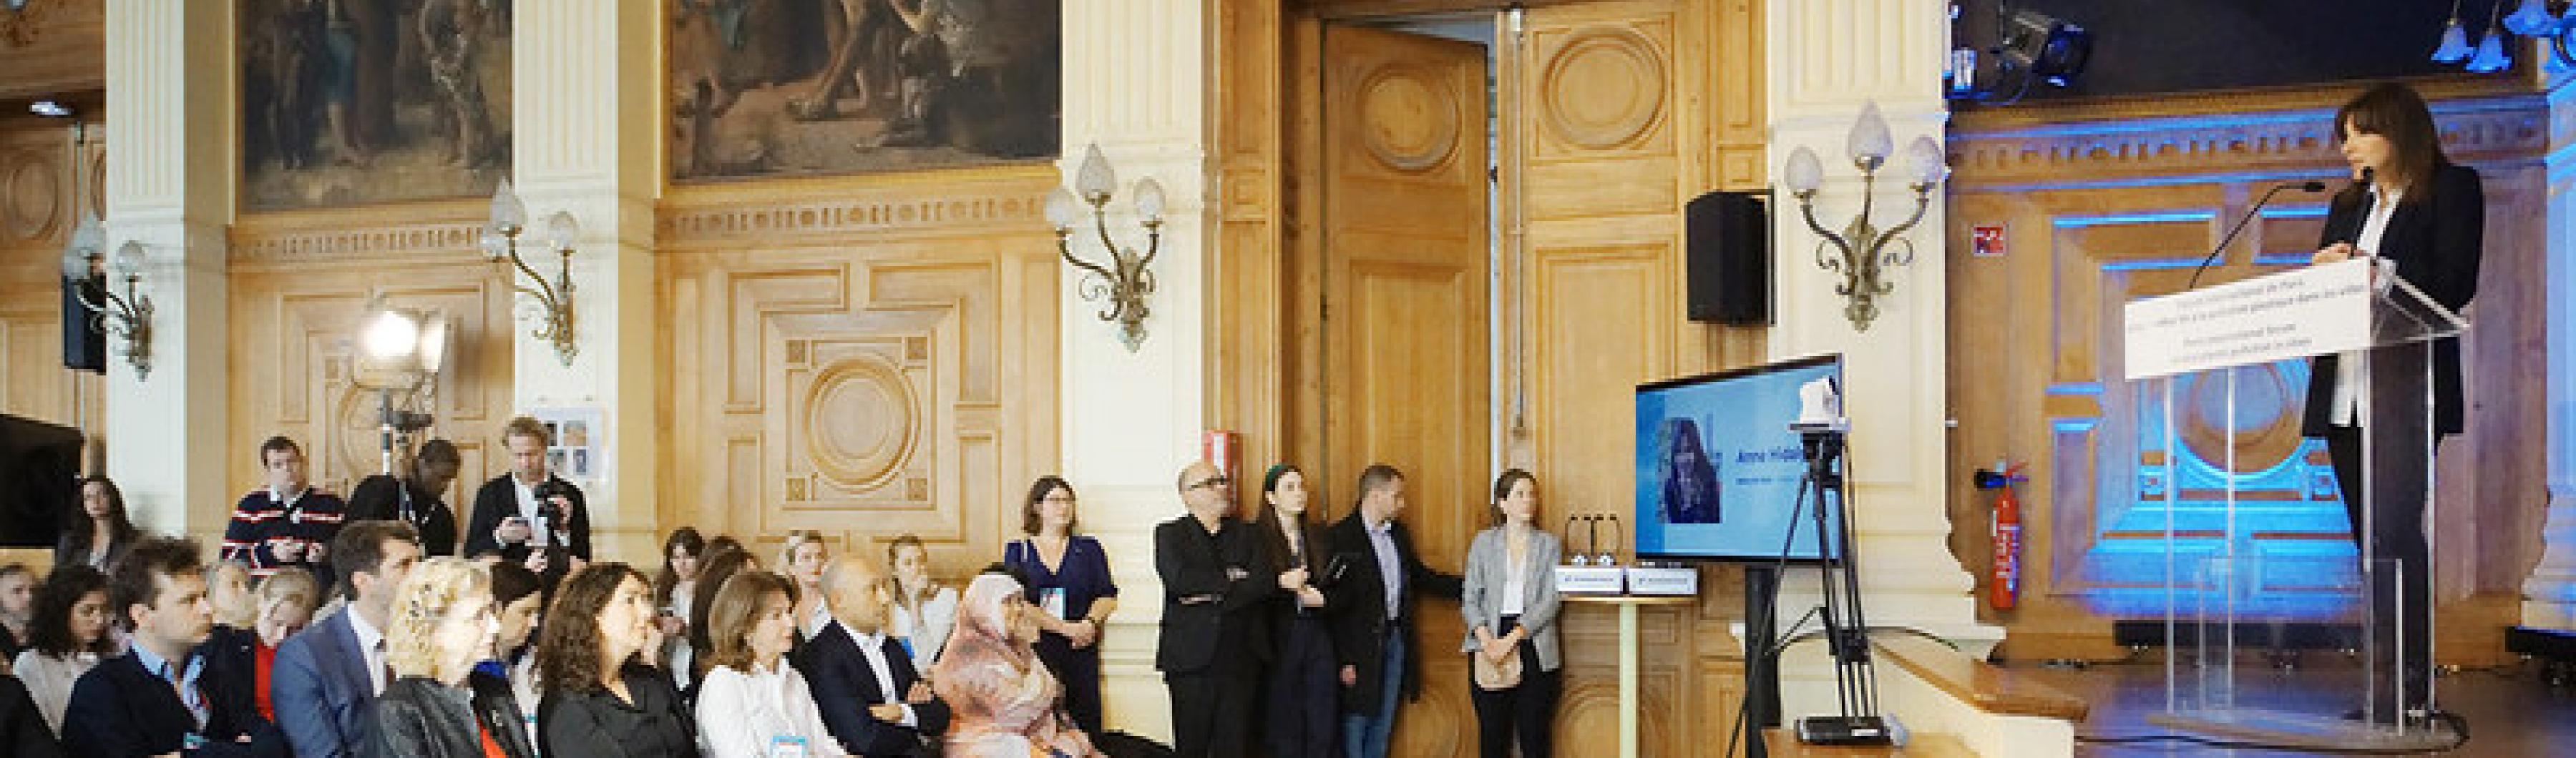 巴黎市长安妮-伊达尔戈在 "结束城市塑料污染的巴黎国际论坛 "上致辞